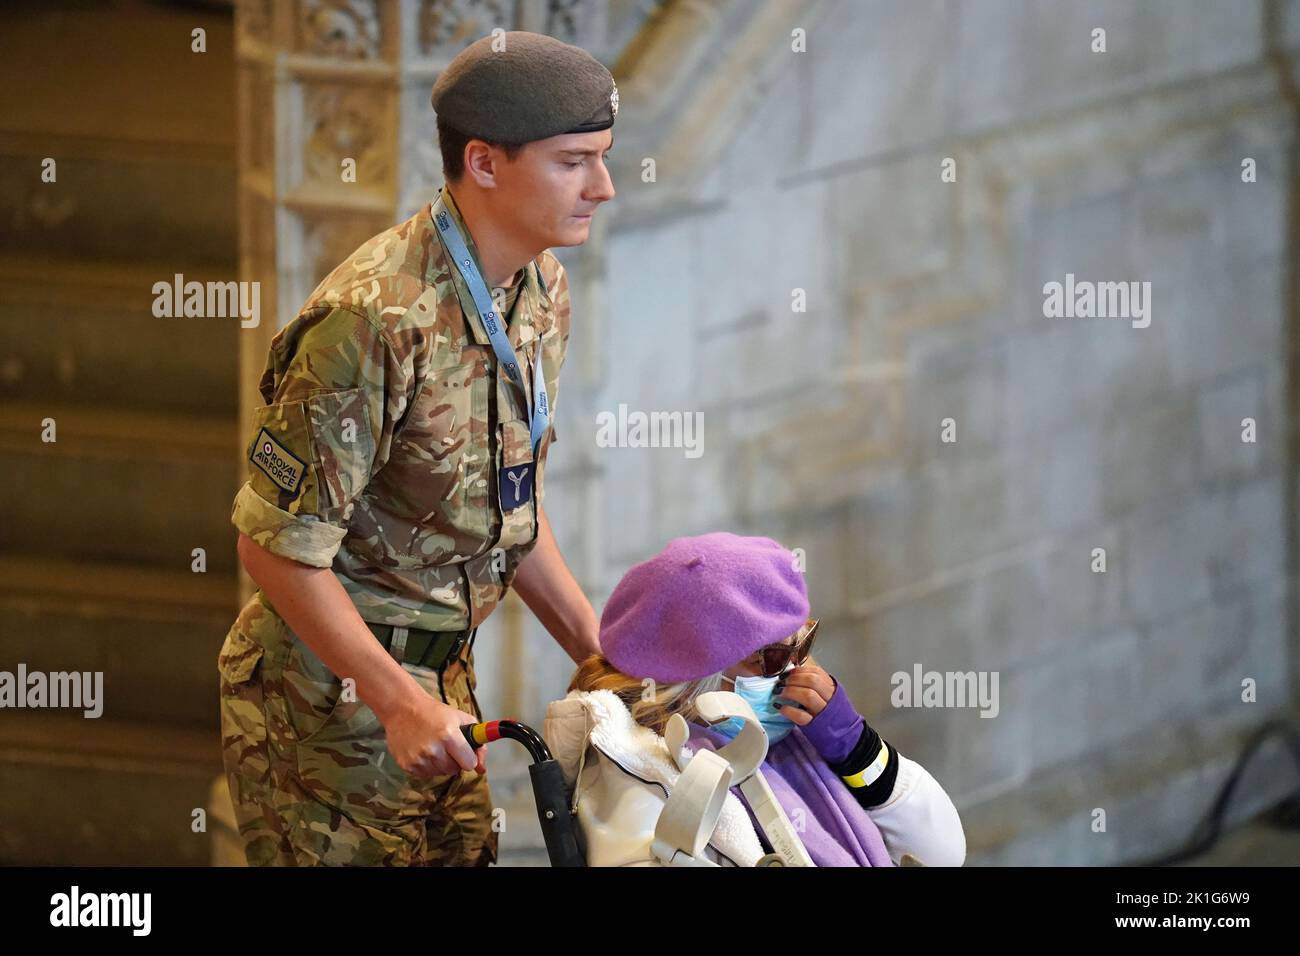 Un miembro del público es empujado en su silla de ruedas por un miembro del ejército para ver el ataúd de la Reina Isabel II, que se encuentra en el estado en la catafalque en Westminster Hall, en el Palacio de Westminster, Londres, antes de su funeral el lunes. Fecha de la foto: Domingo 18 de septiembre de 2022. Foto de stock